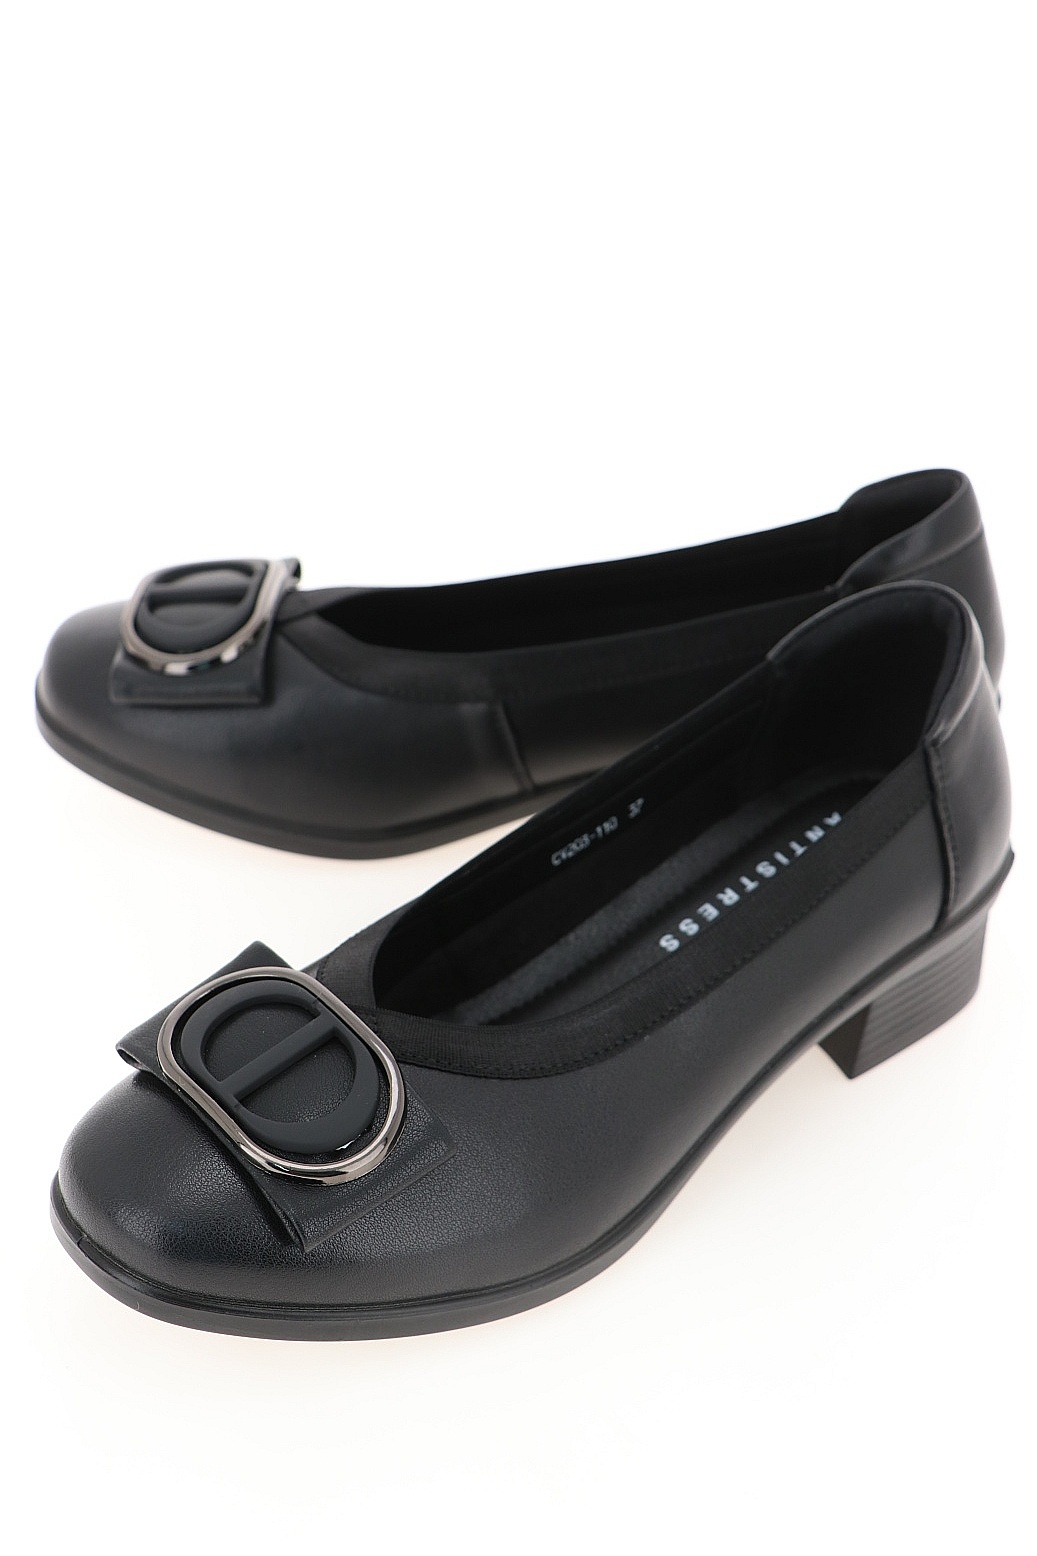 Туфли женские Baden CV203-110 черные 41 RU